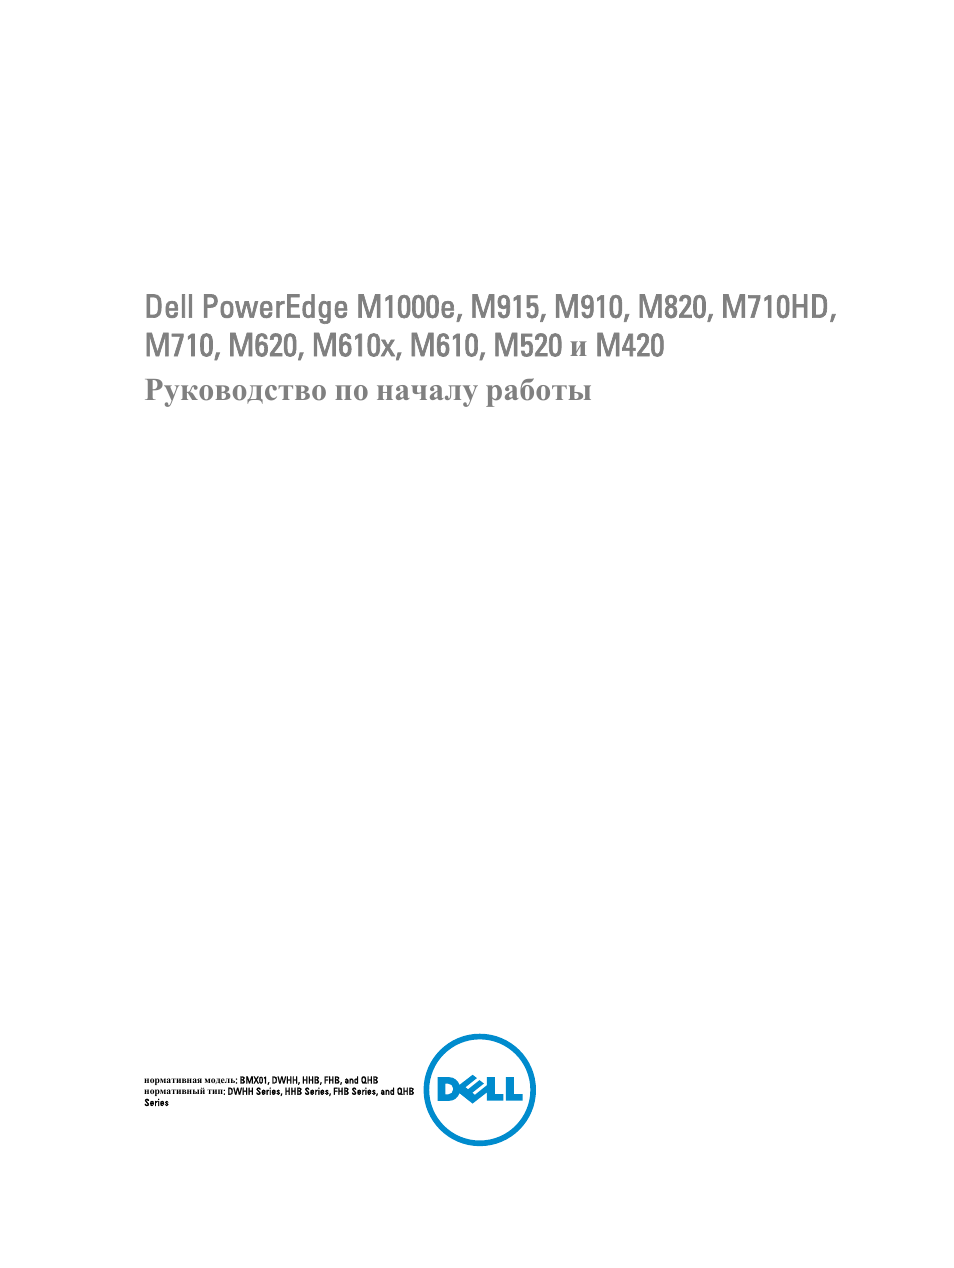 Инструкция по эксплуатации Dell POWEREDGE M915 | 13 страниц